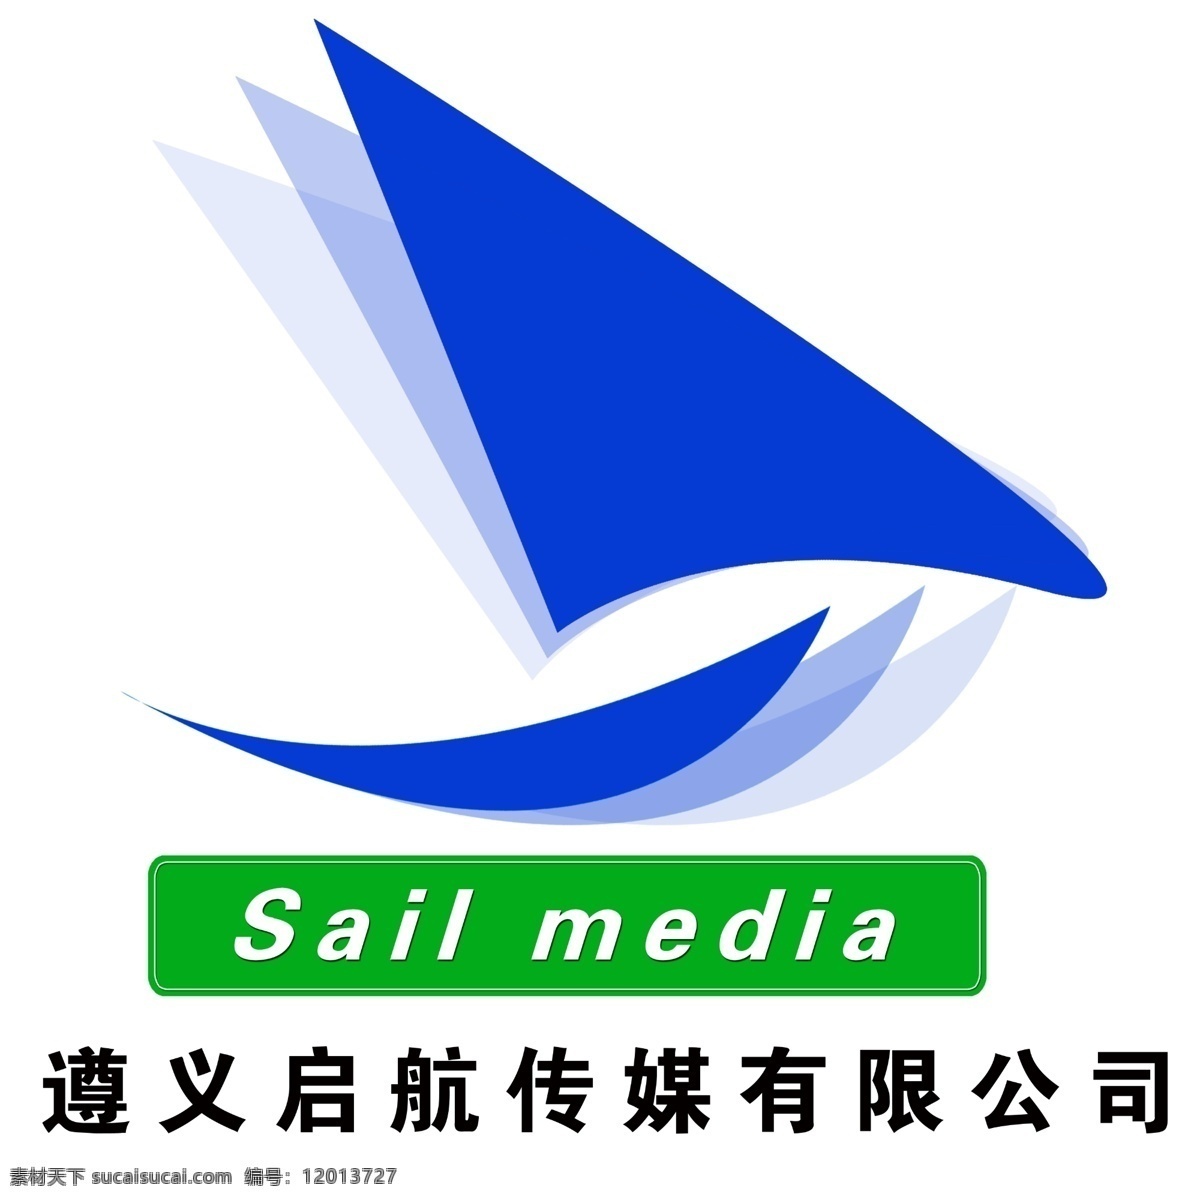 遵义 启航 传媒 有限公司 帆船 中文 英文 阴影 广告公司标志 标志设计 广告设计模板 源文件